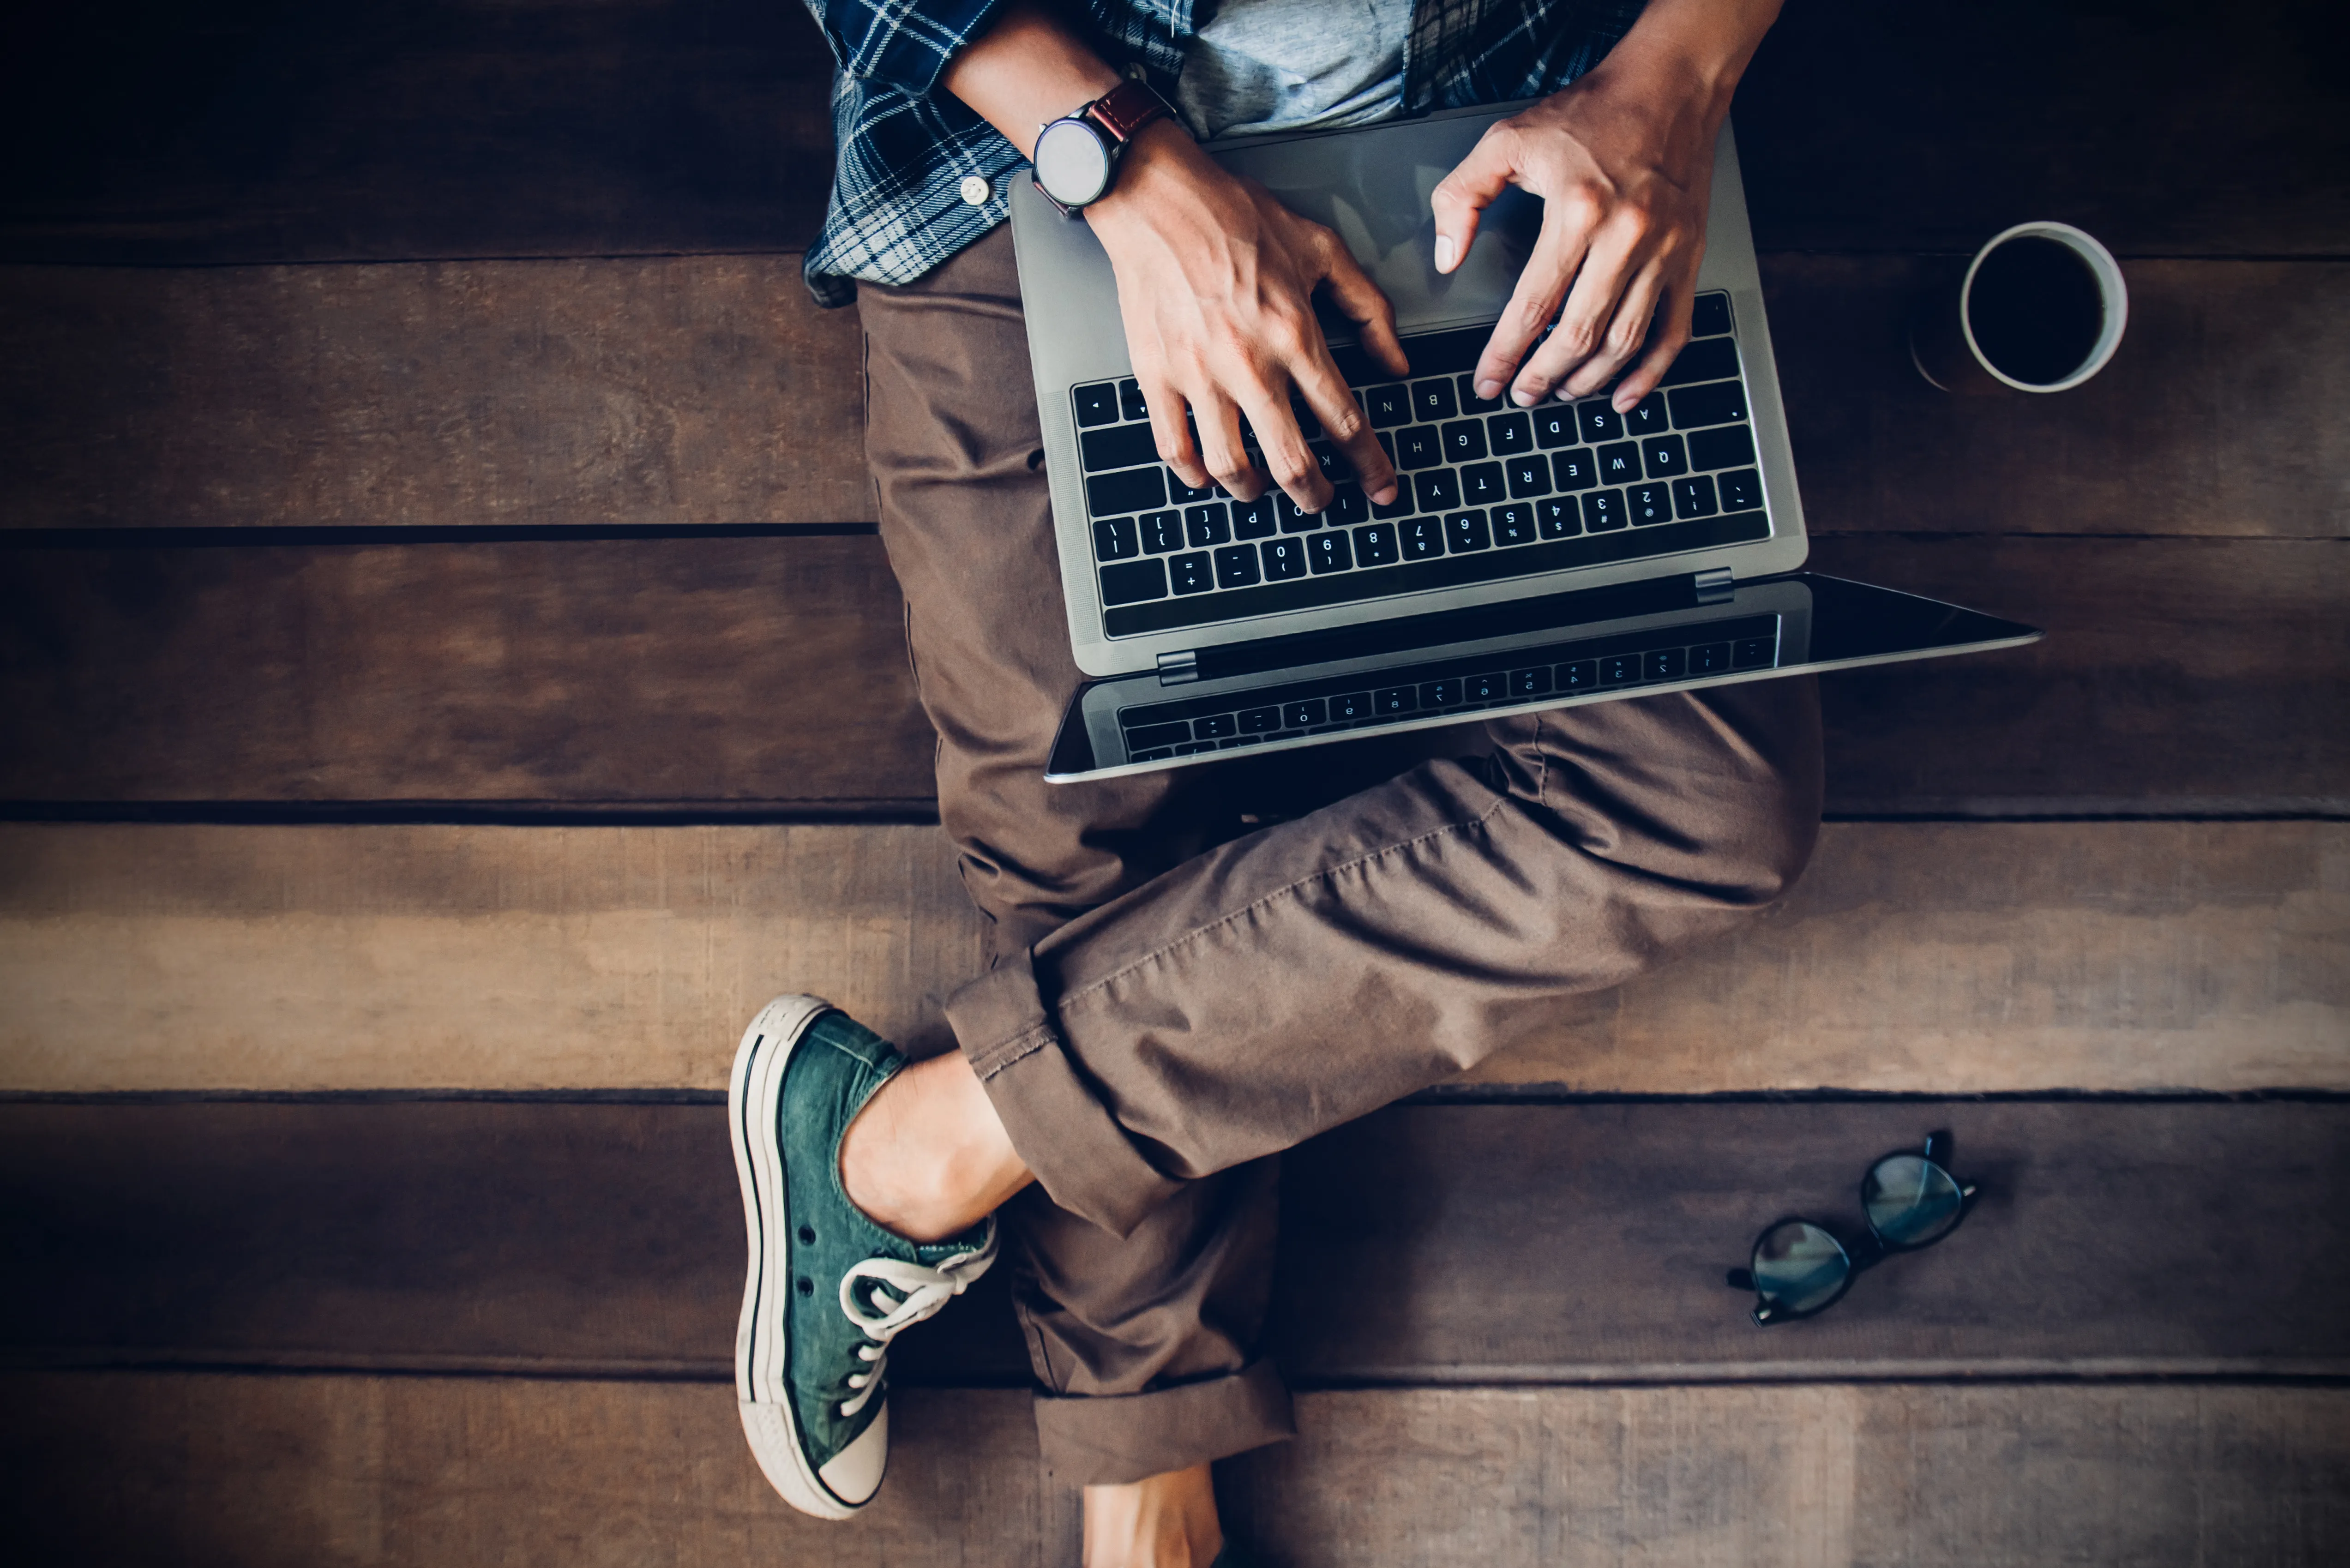 Mężczyzna siedzi na drewnianych schodach z laptopem na kolanach, jego ręce są na klawiaturze laptopa i coś wyszukują.